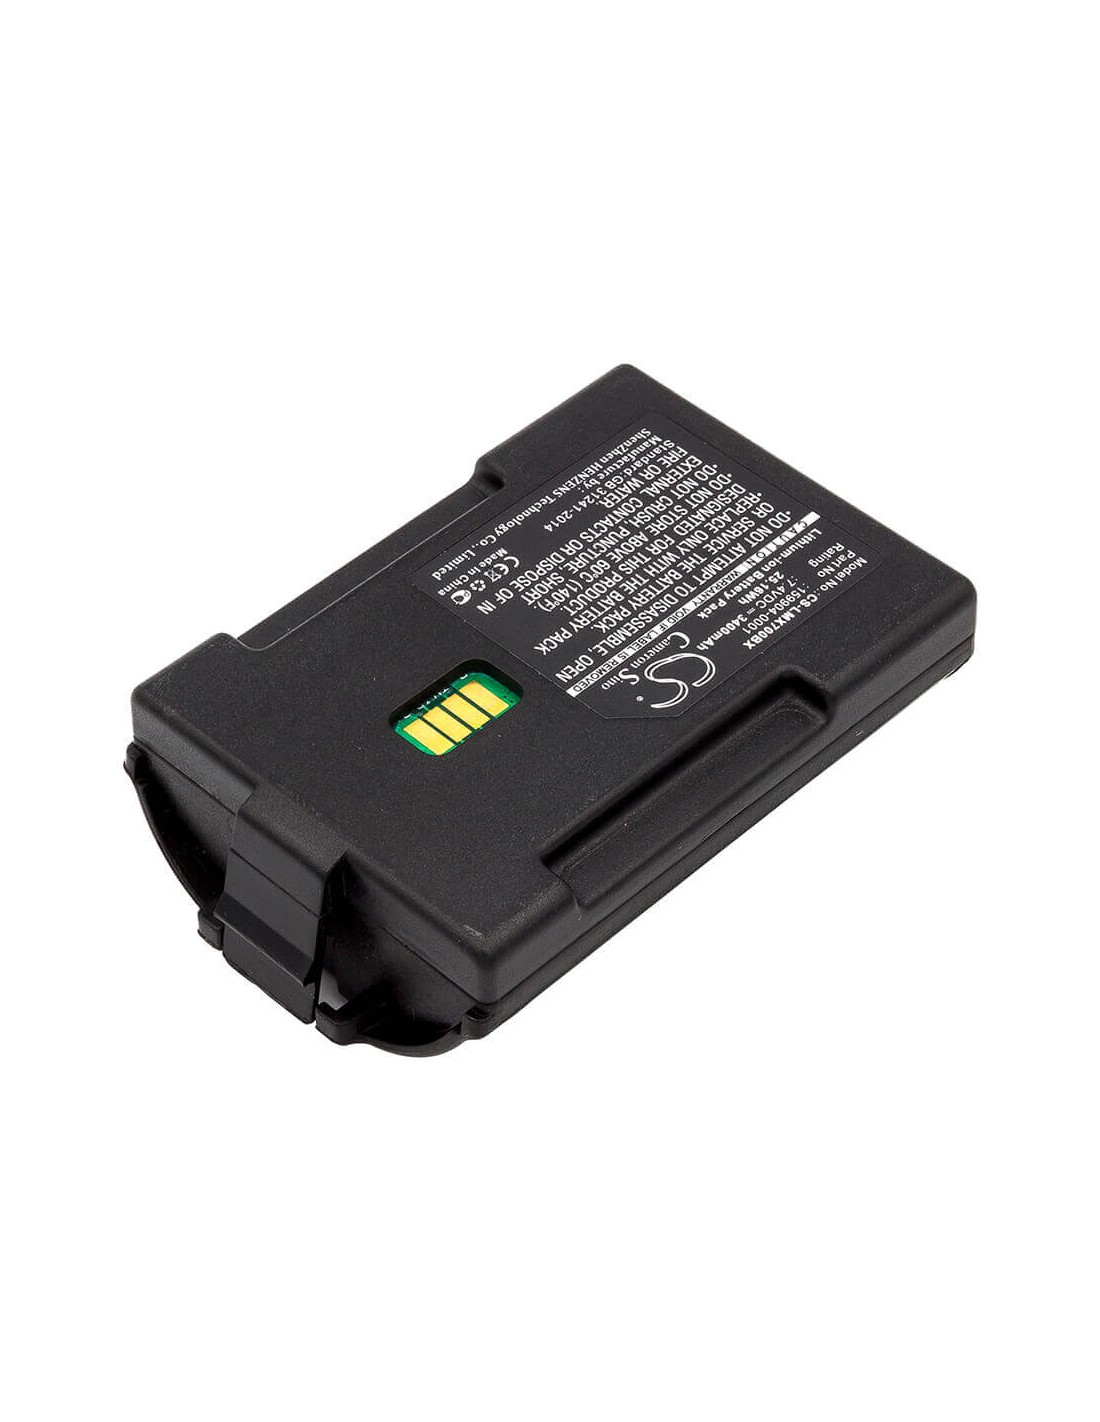 Battery for Lxe, Mx7 7.4V, 3400mAh - 25.16Wh